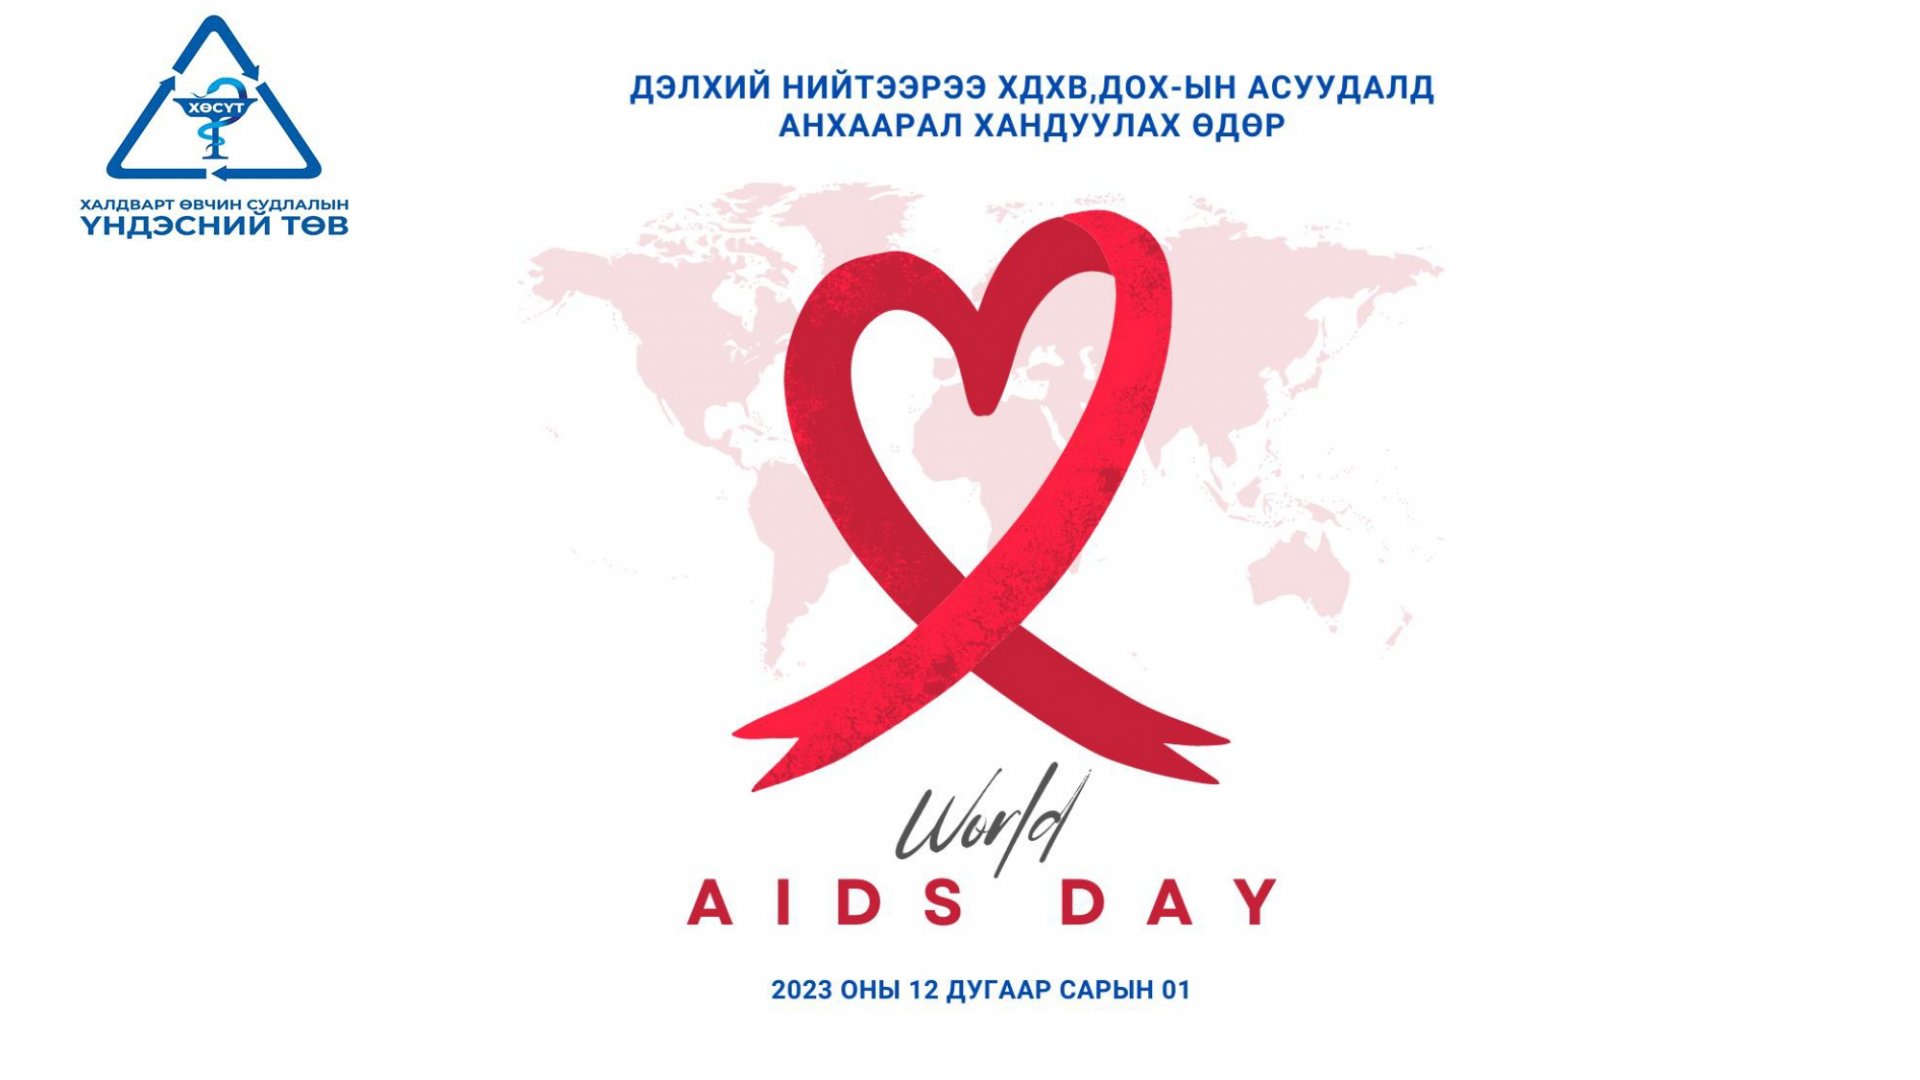 Дэлхий нийтээр ХДХВ, ДОХ-ын асуудалд анхаарал хандуулах өдөр